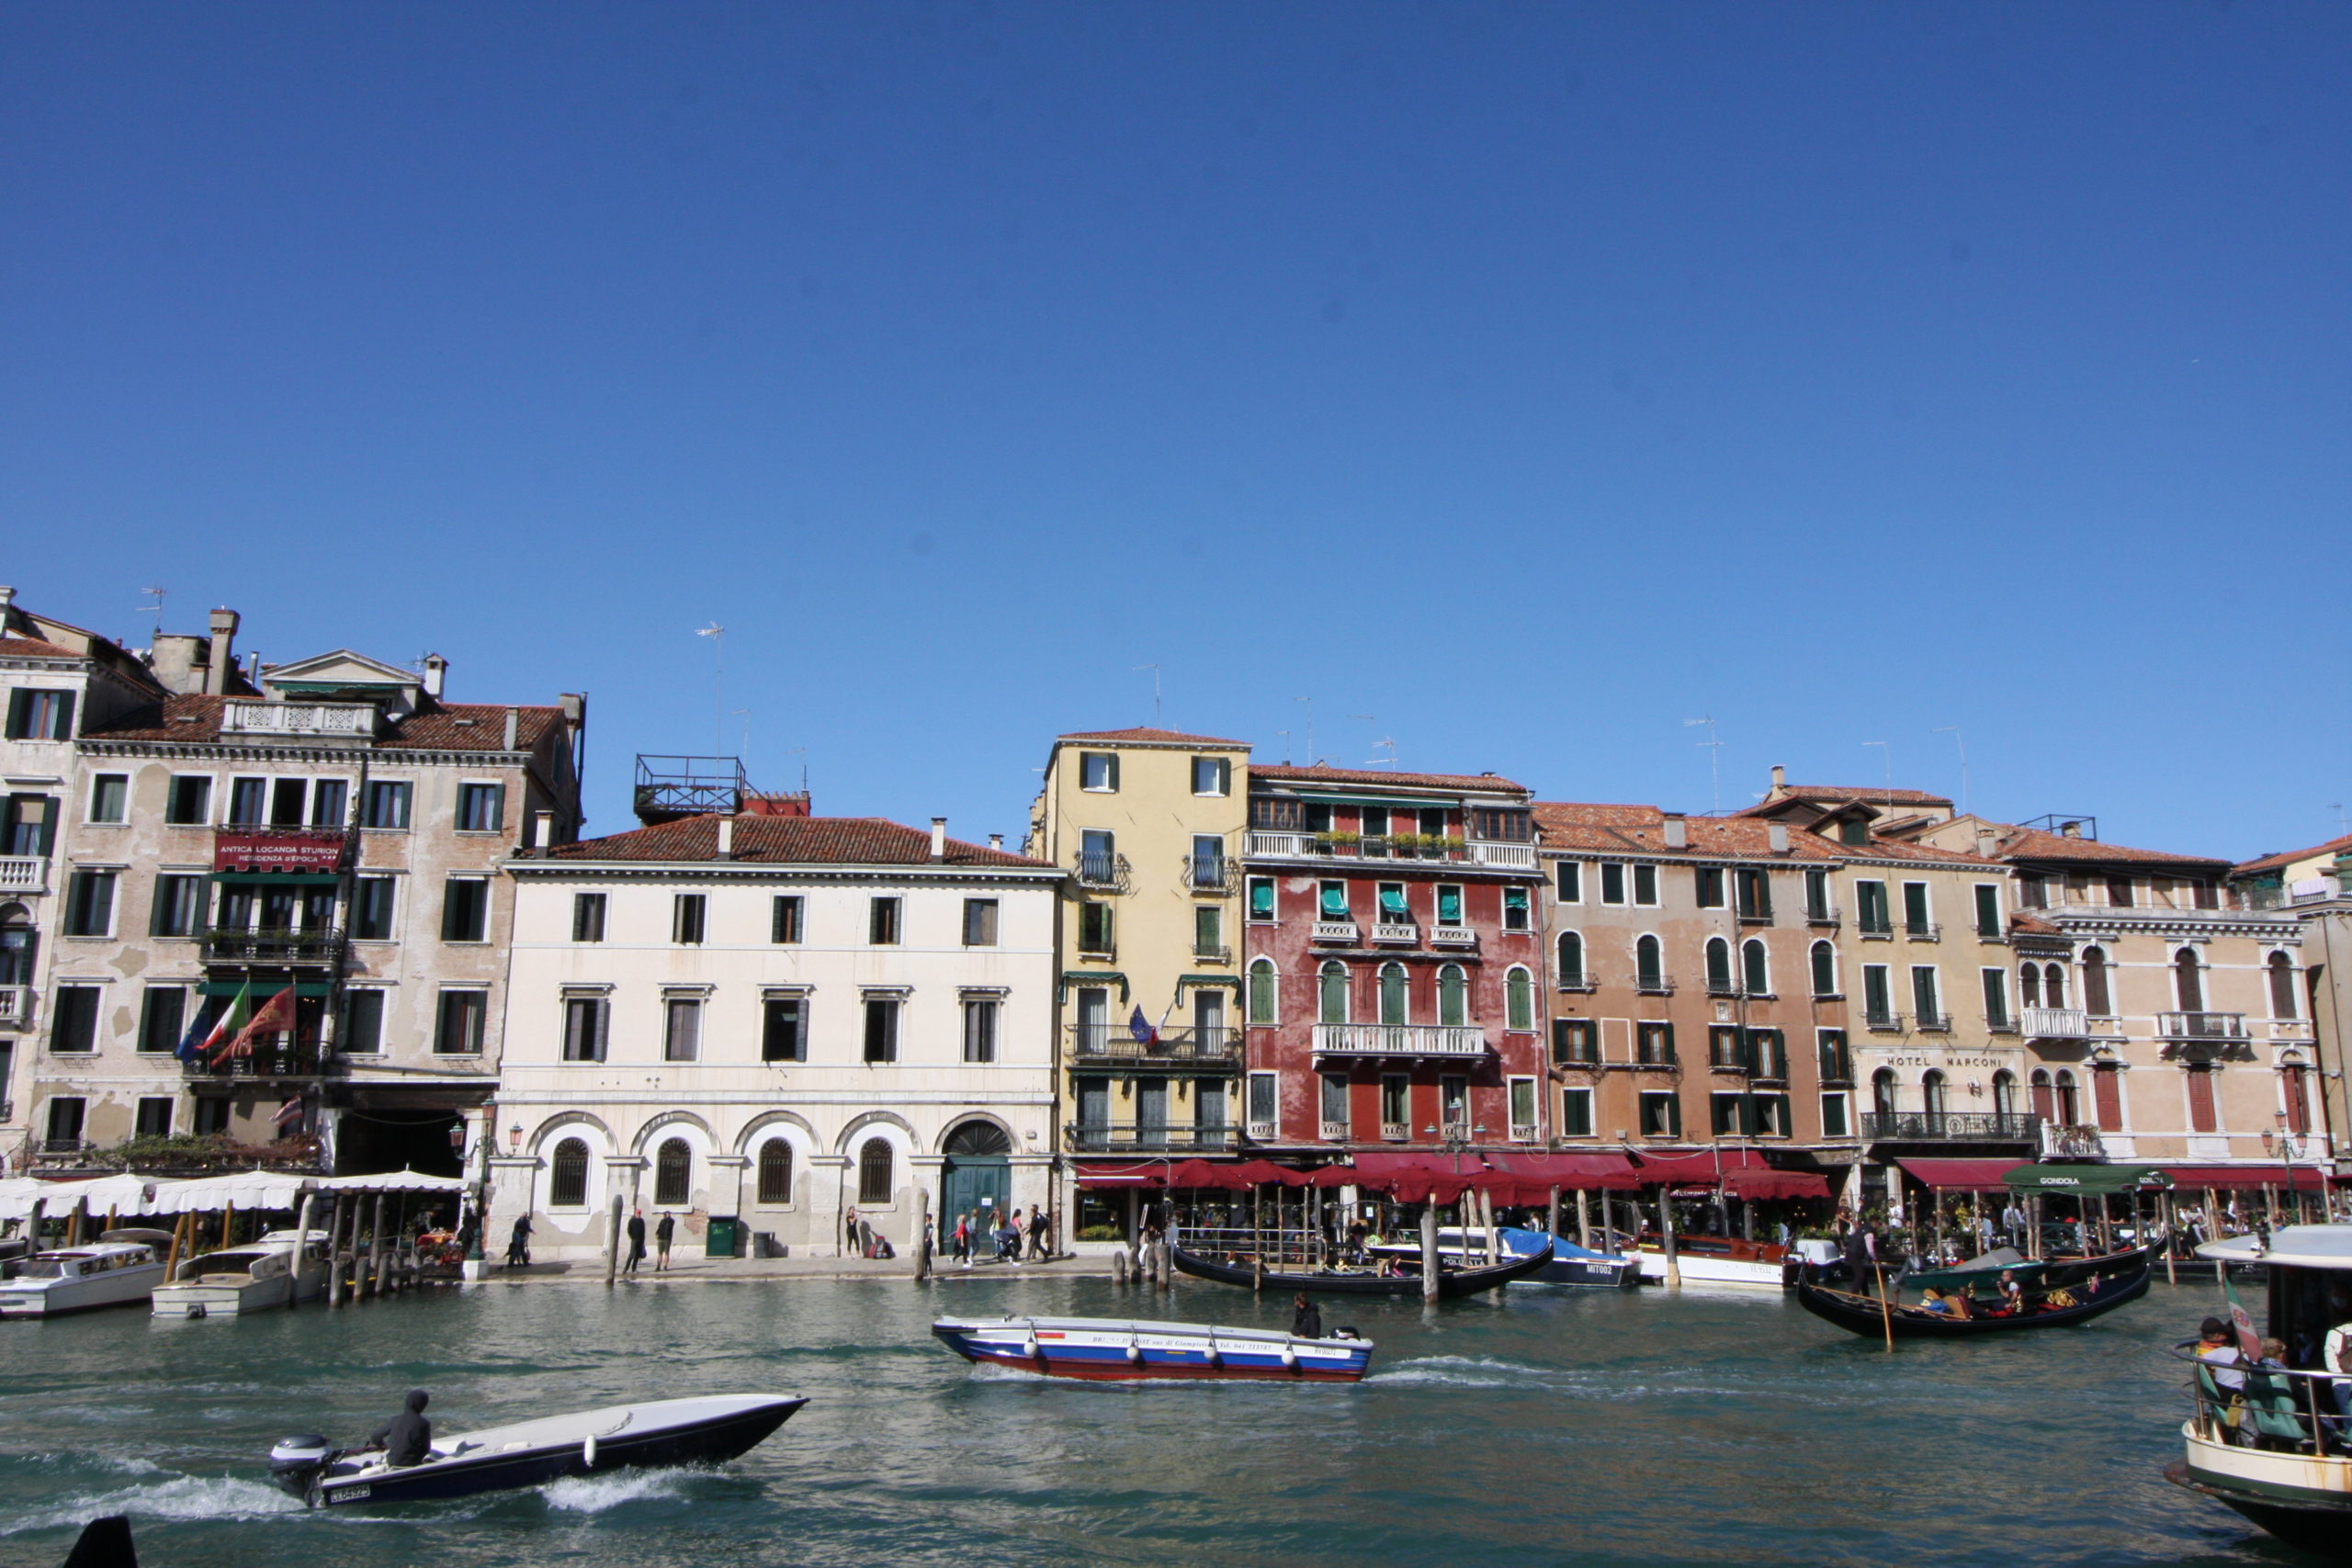 Busreise Venedig bunte landestypische Wohnhäuser Canale Grande Gondeln